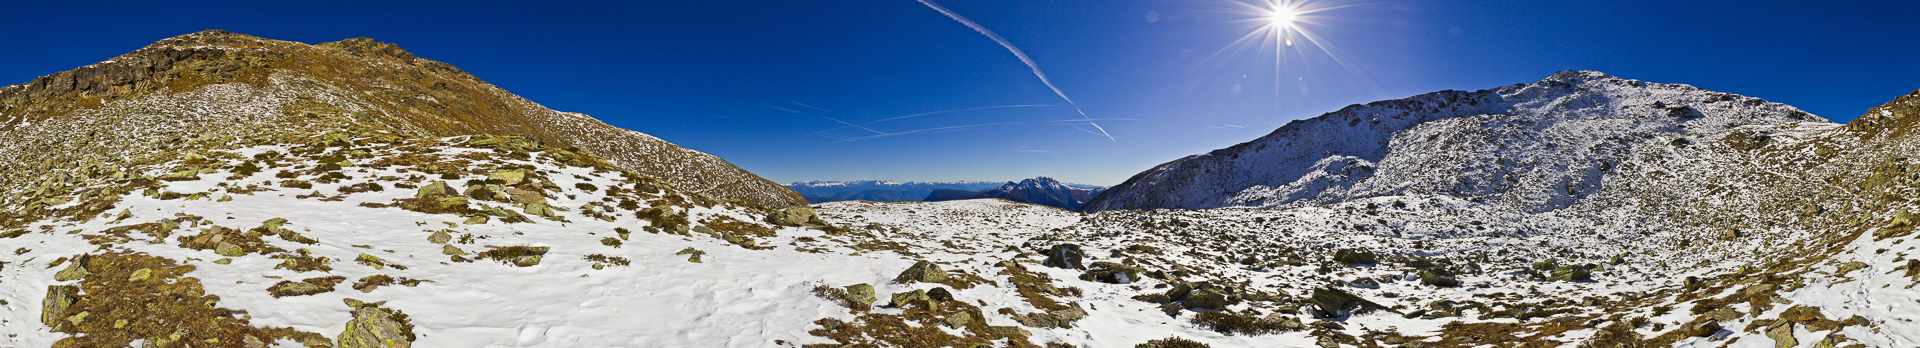 Rechts der Naturnser Hochwart und in der Mitte die Dolomiten.